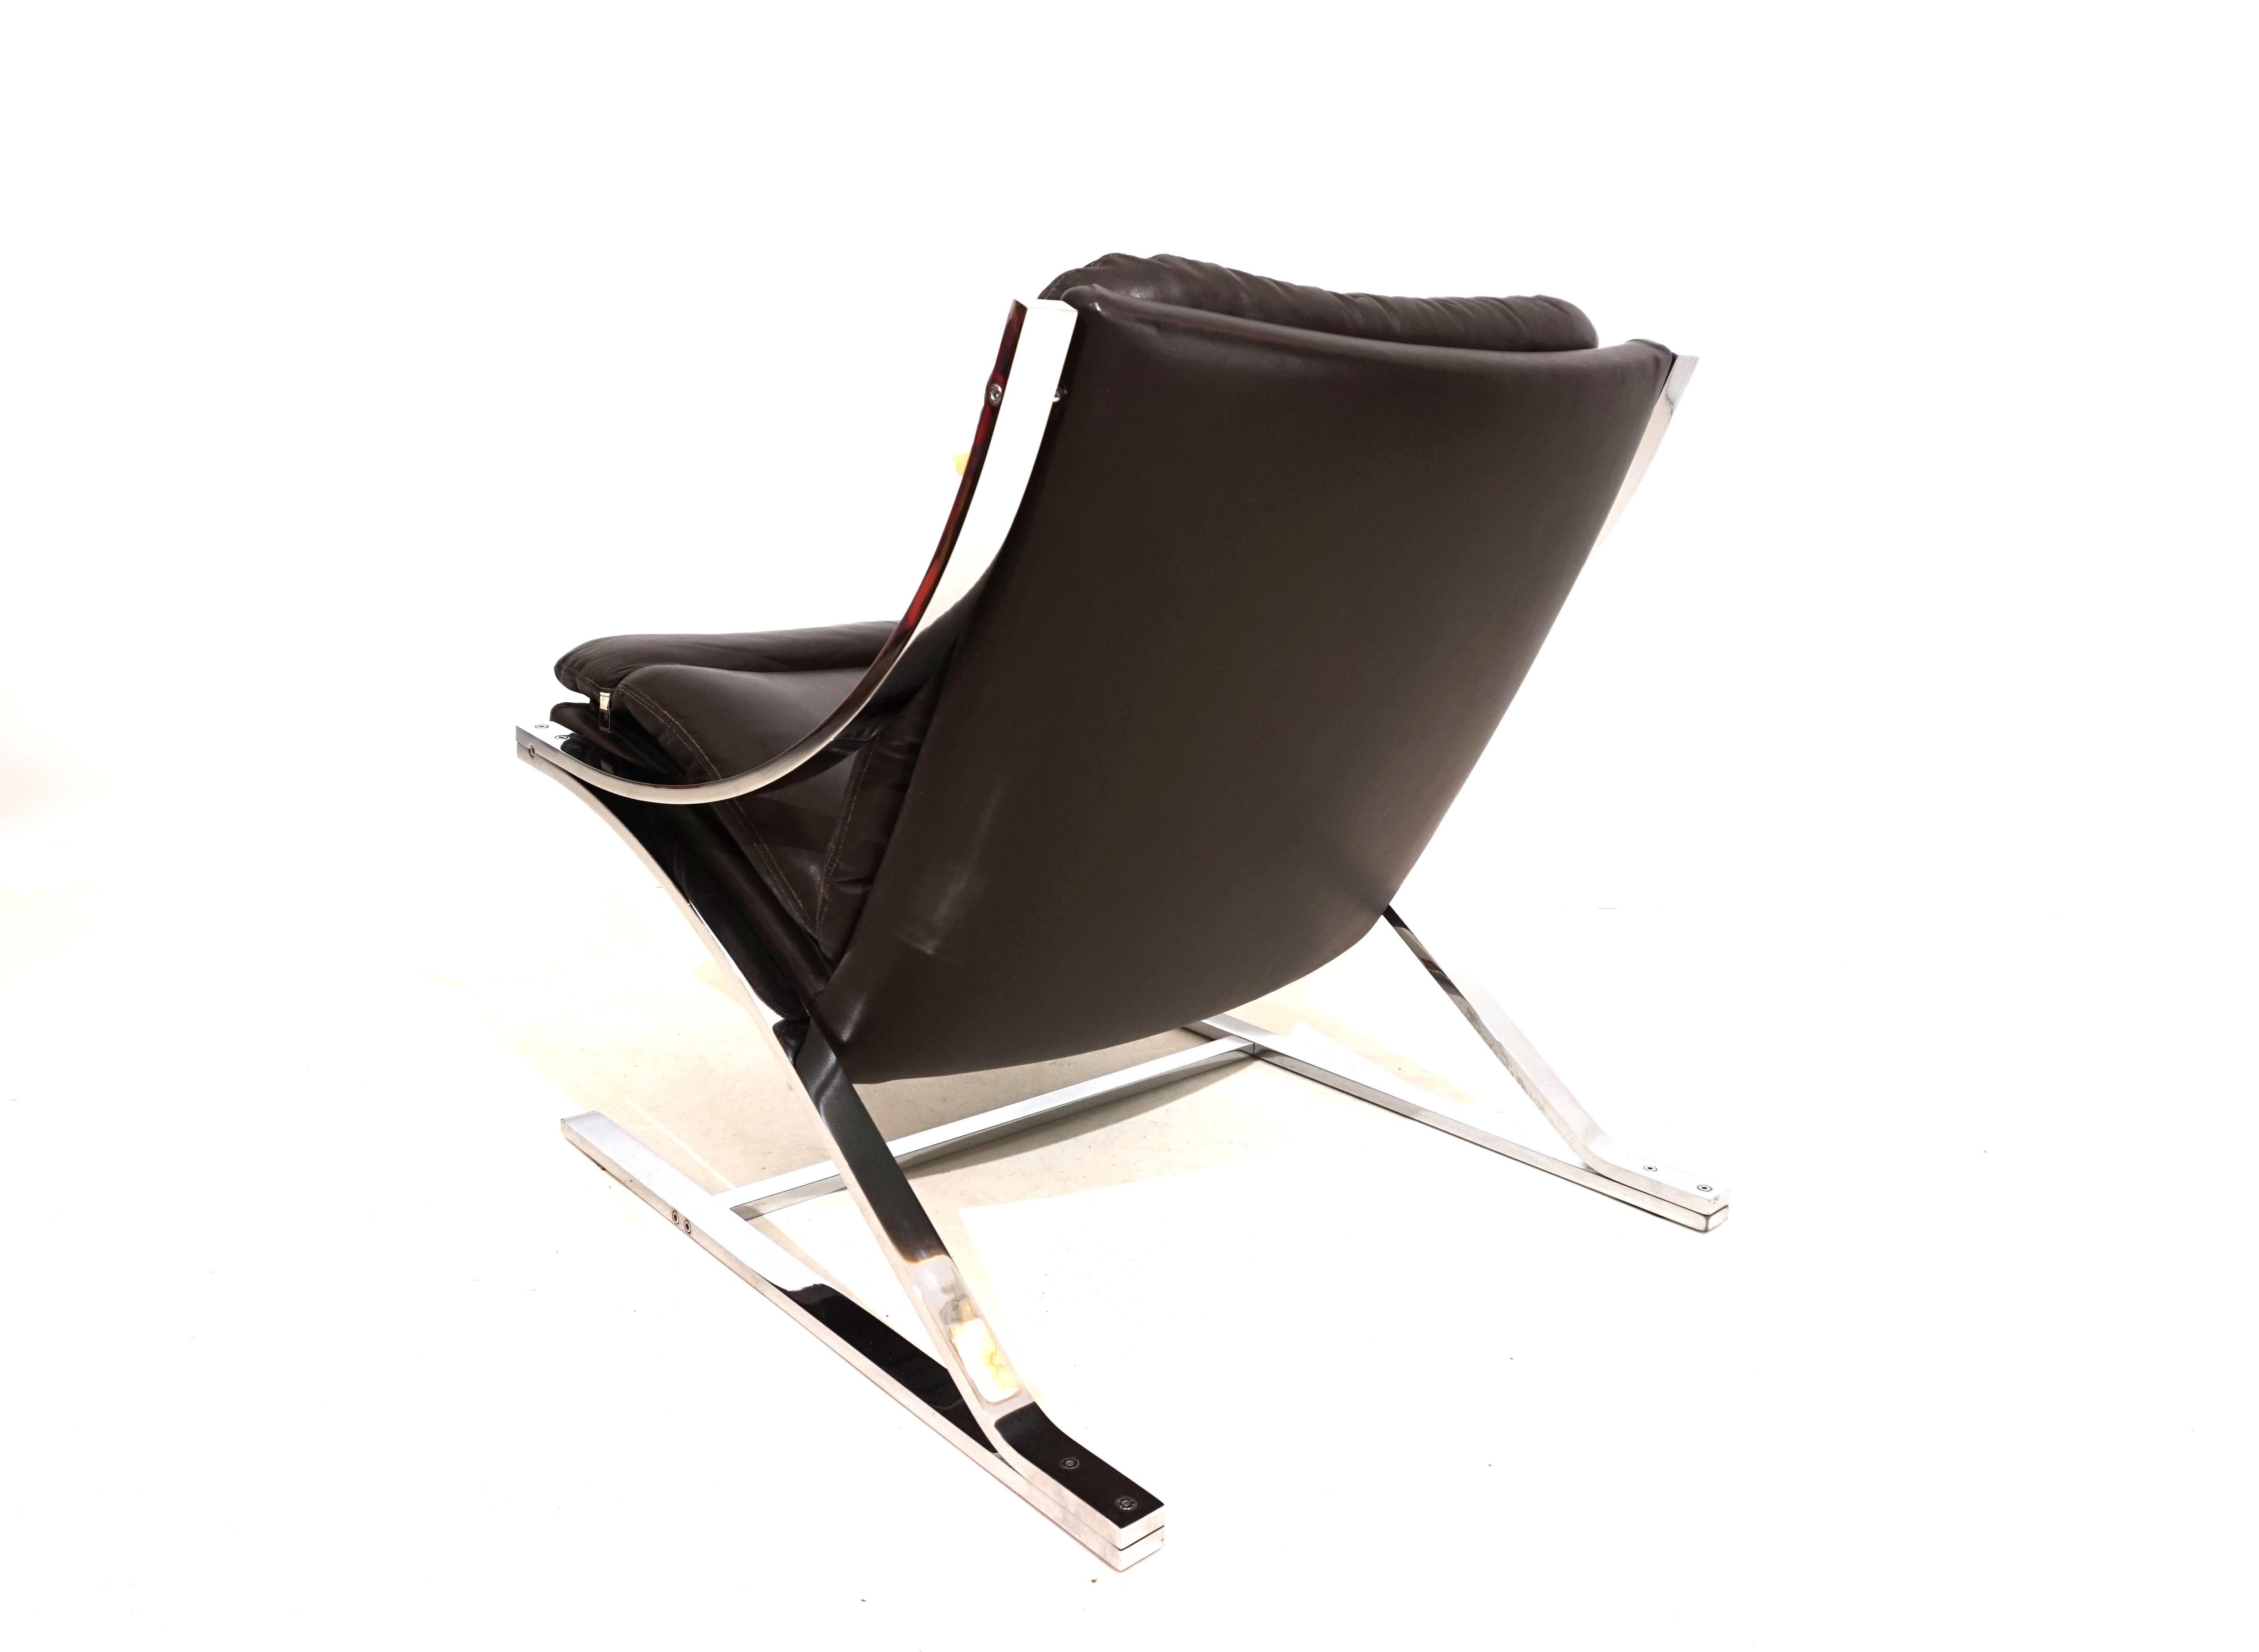 Der Z-Sessel besteht aus dunkelbraunem Anilinleder und ist in ausgezeichnetem Zustand. Das weiche Leder weist minimale Gebrauchsspuren auf. Der schwere Edelstahlrahmen hat die Form eines Z und gibt dem Sessel seinen Namen Z-Sessel. Der Metallrahmen